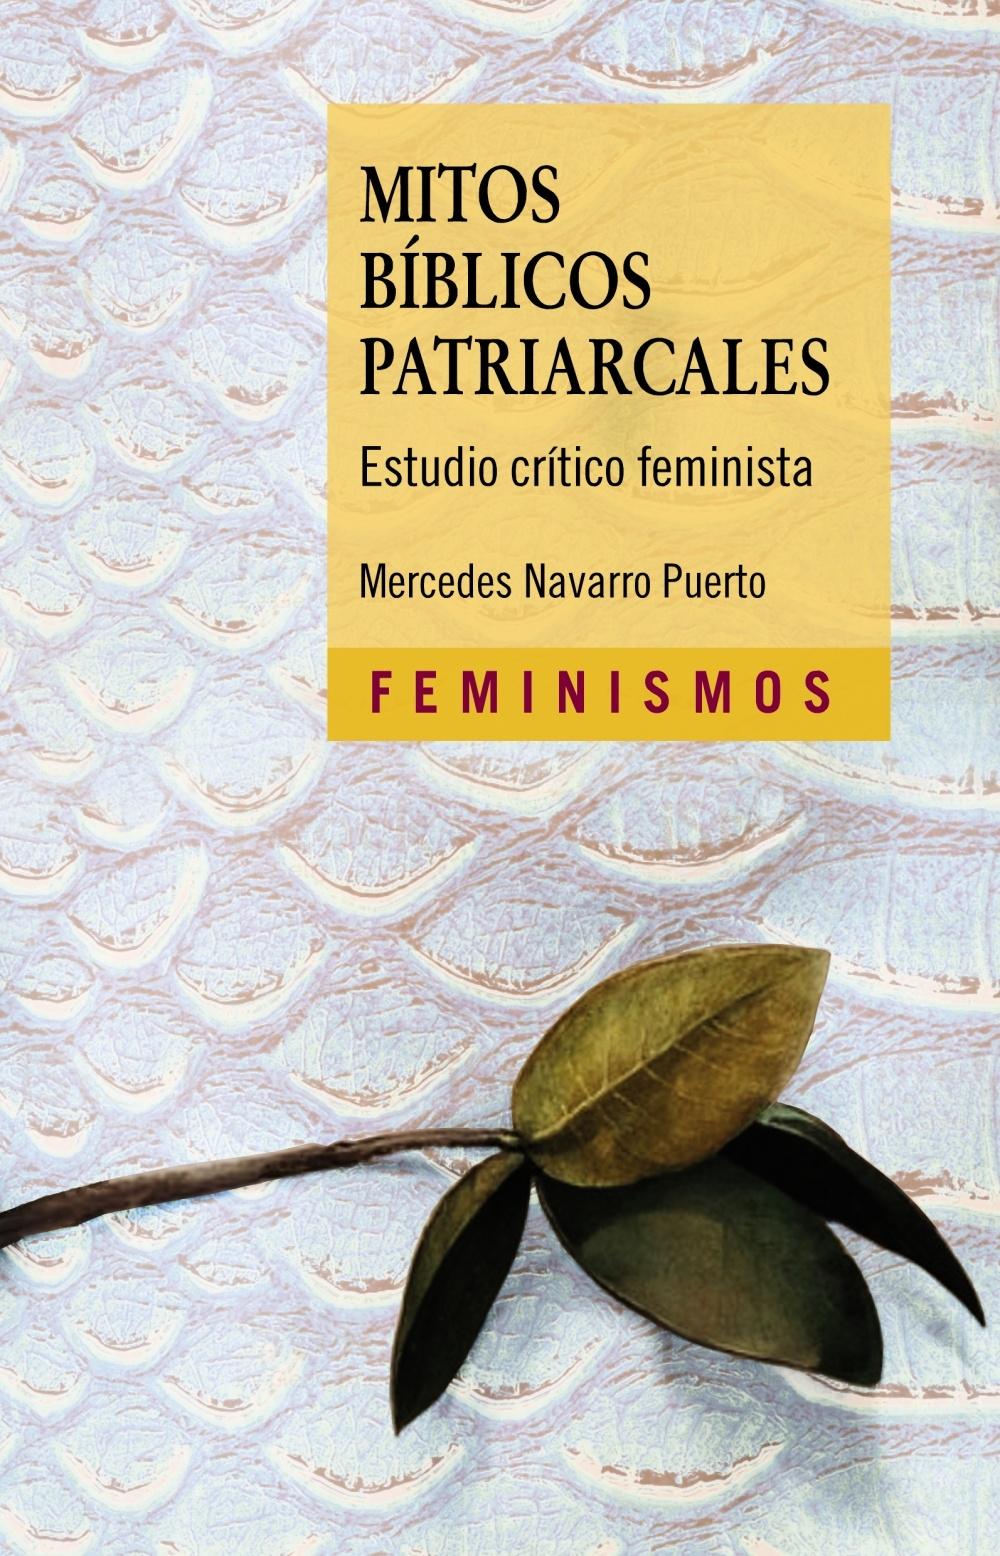 Mitos Bíblicos Patriarcales "Estudio Crítico Feminista"